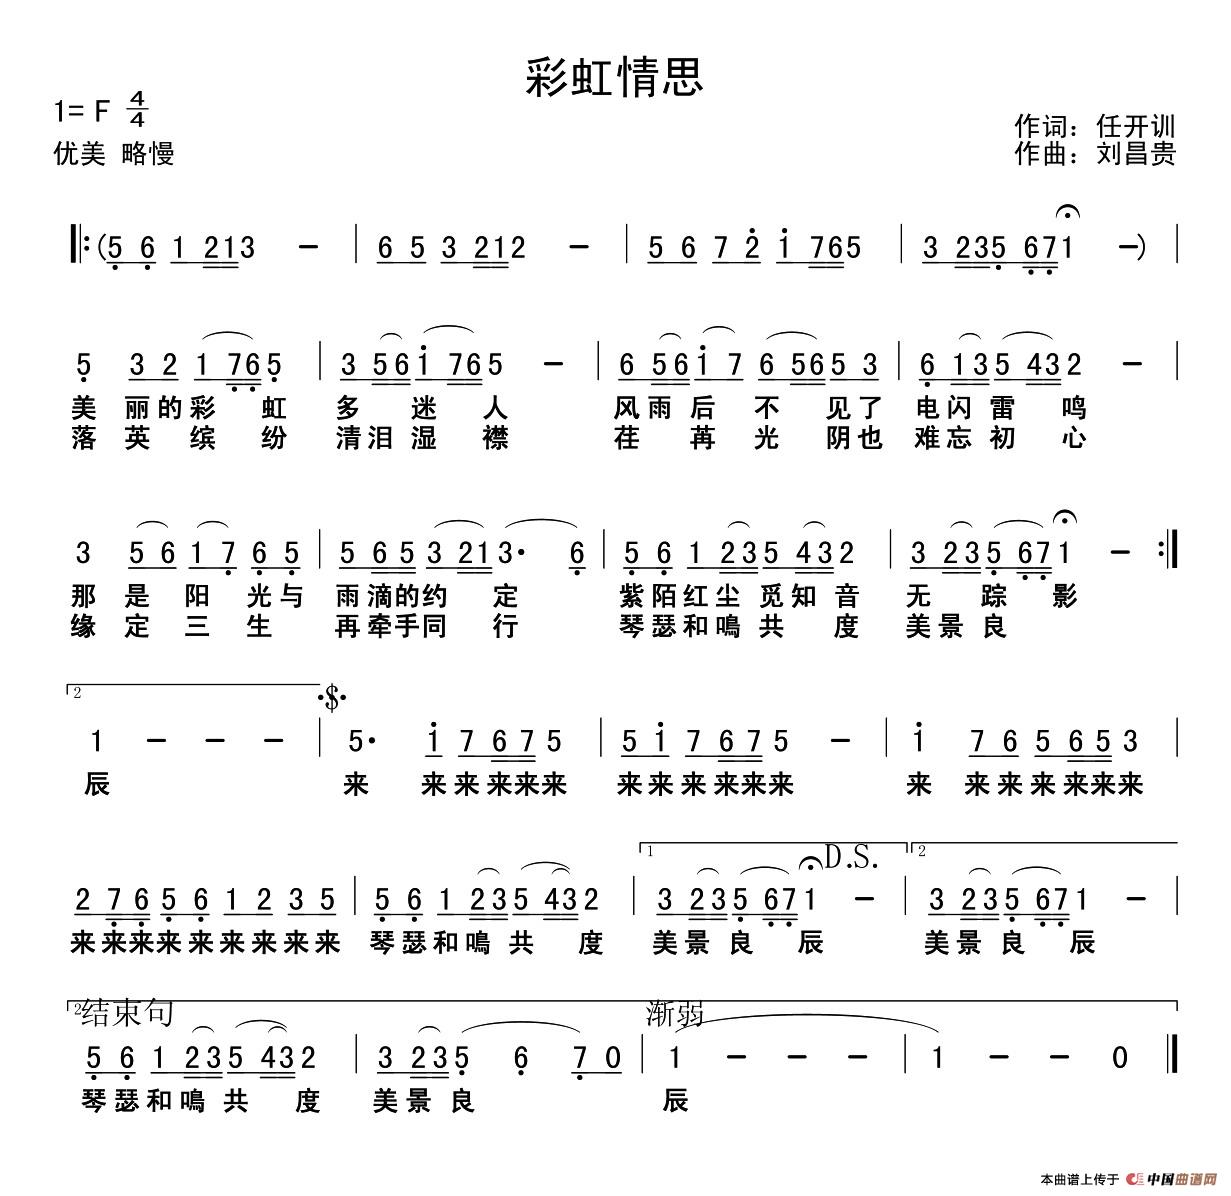 彩虹情思 (1)_1.jpg